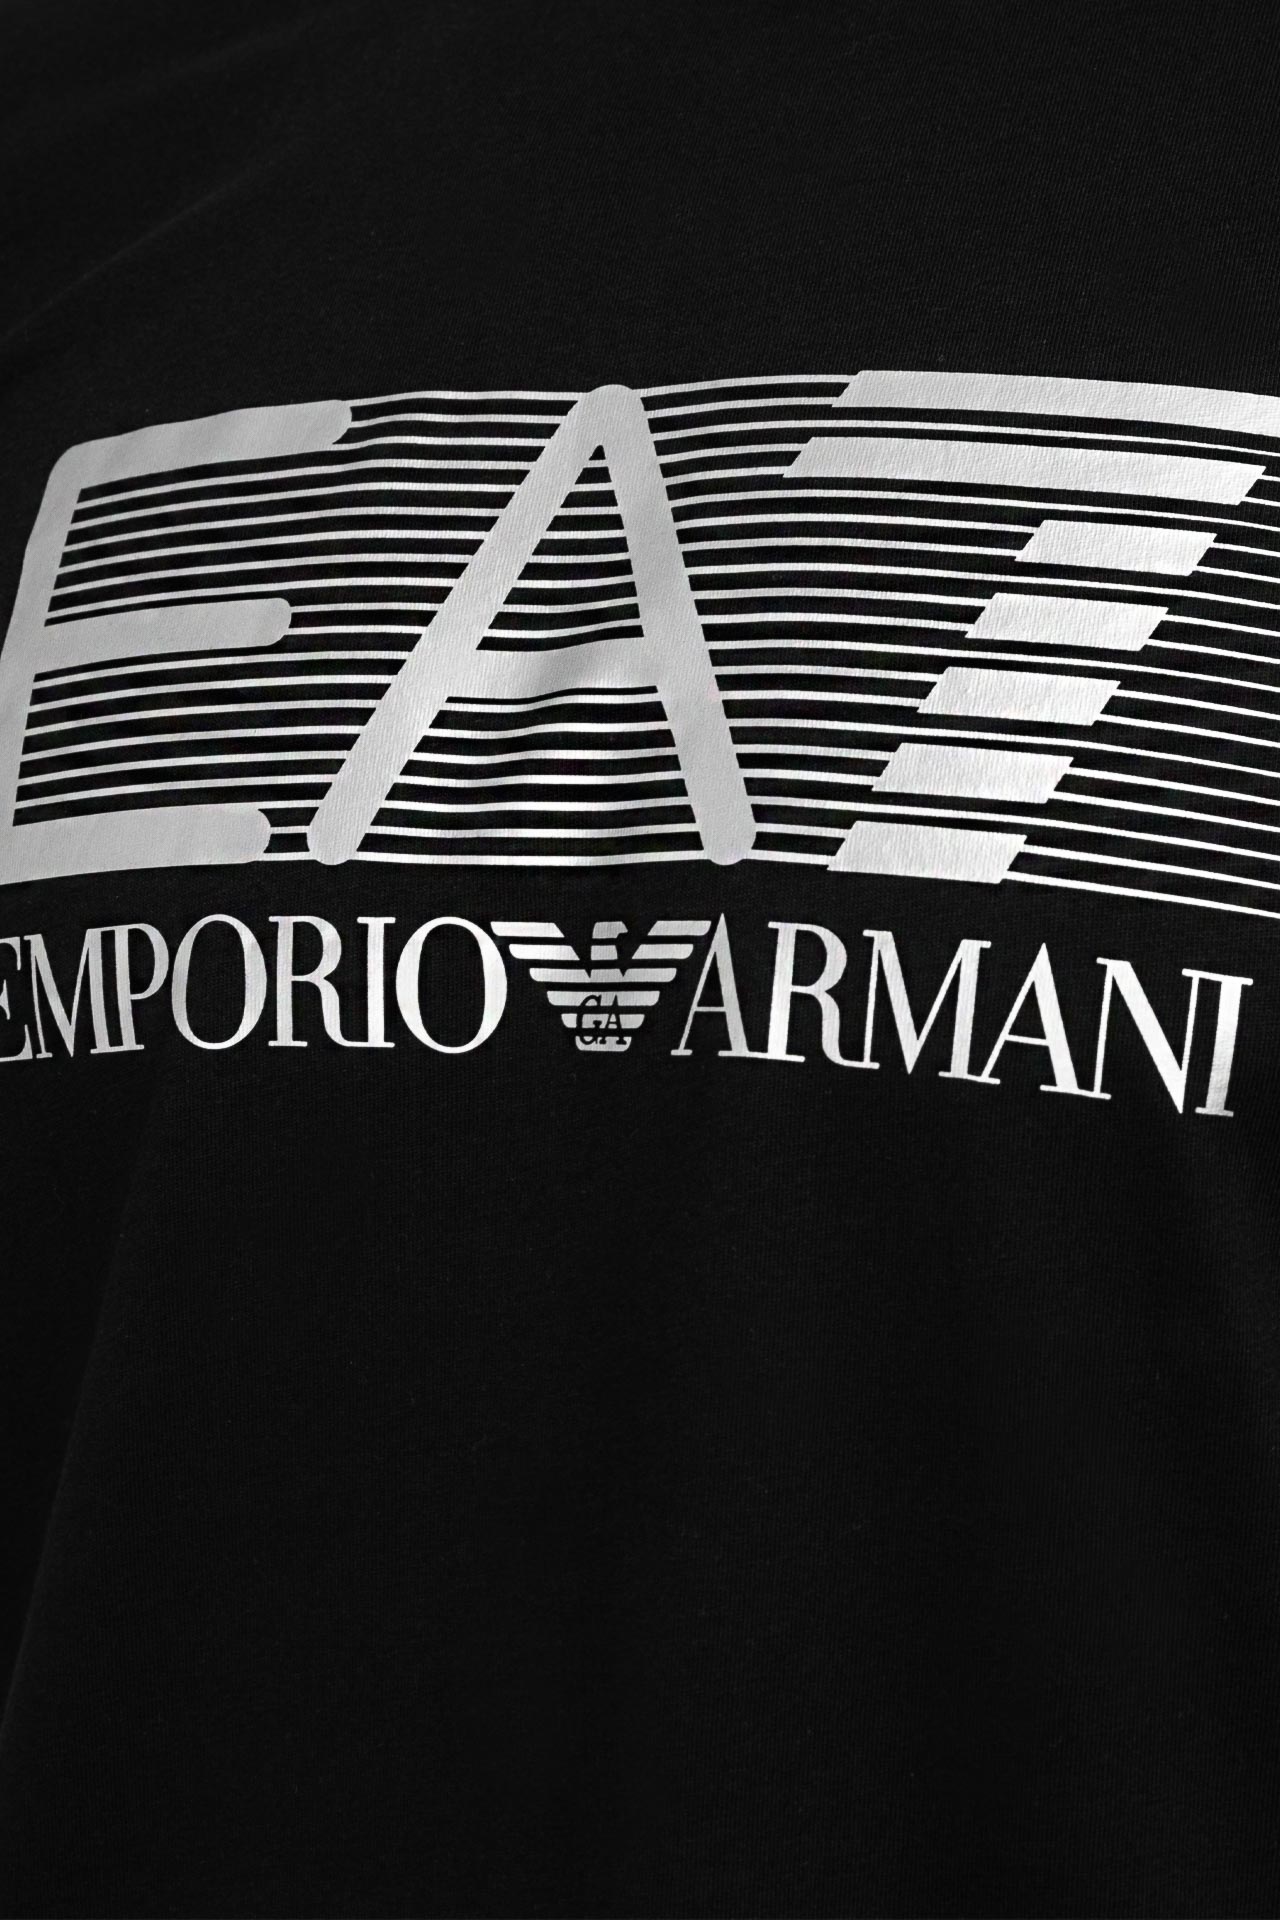 Koszulka męska EA7 Emporio Armani 6LPT09-PJ02Z-0200